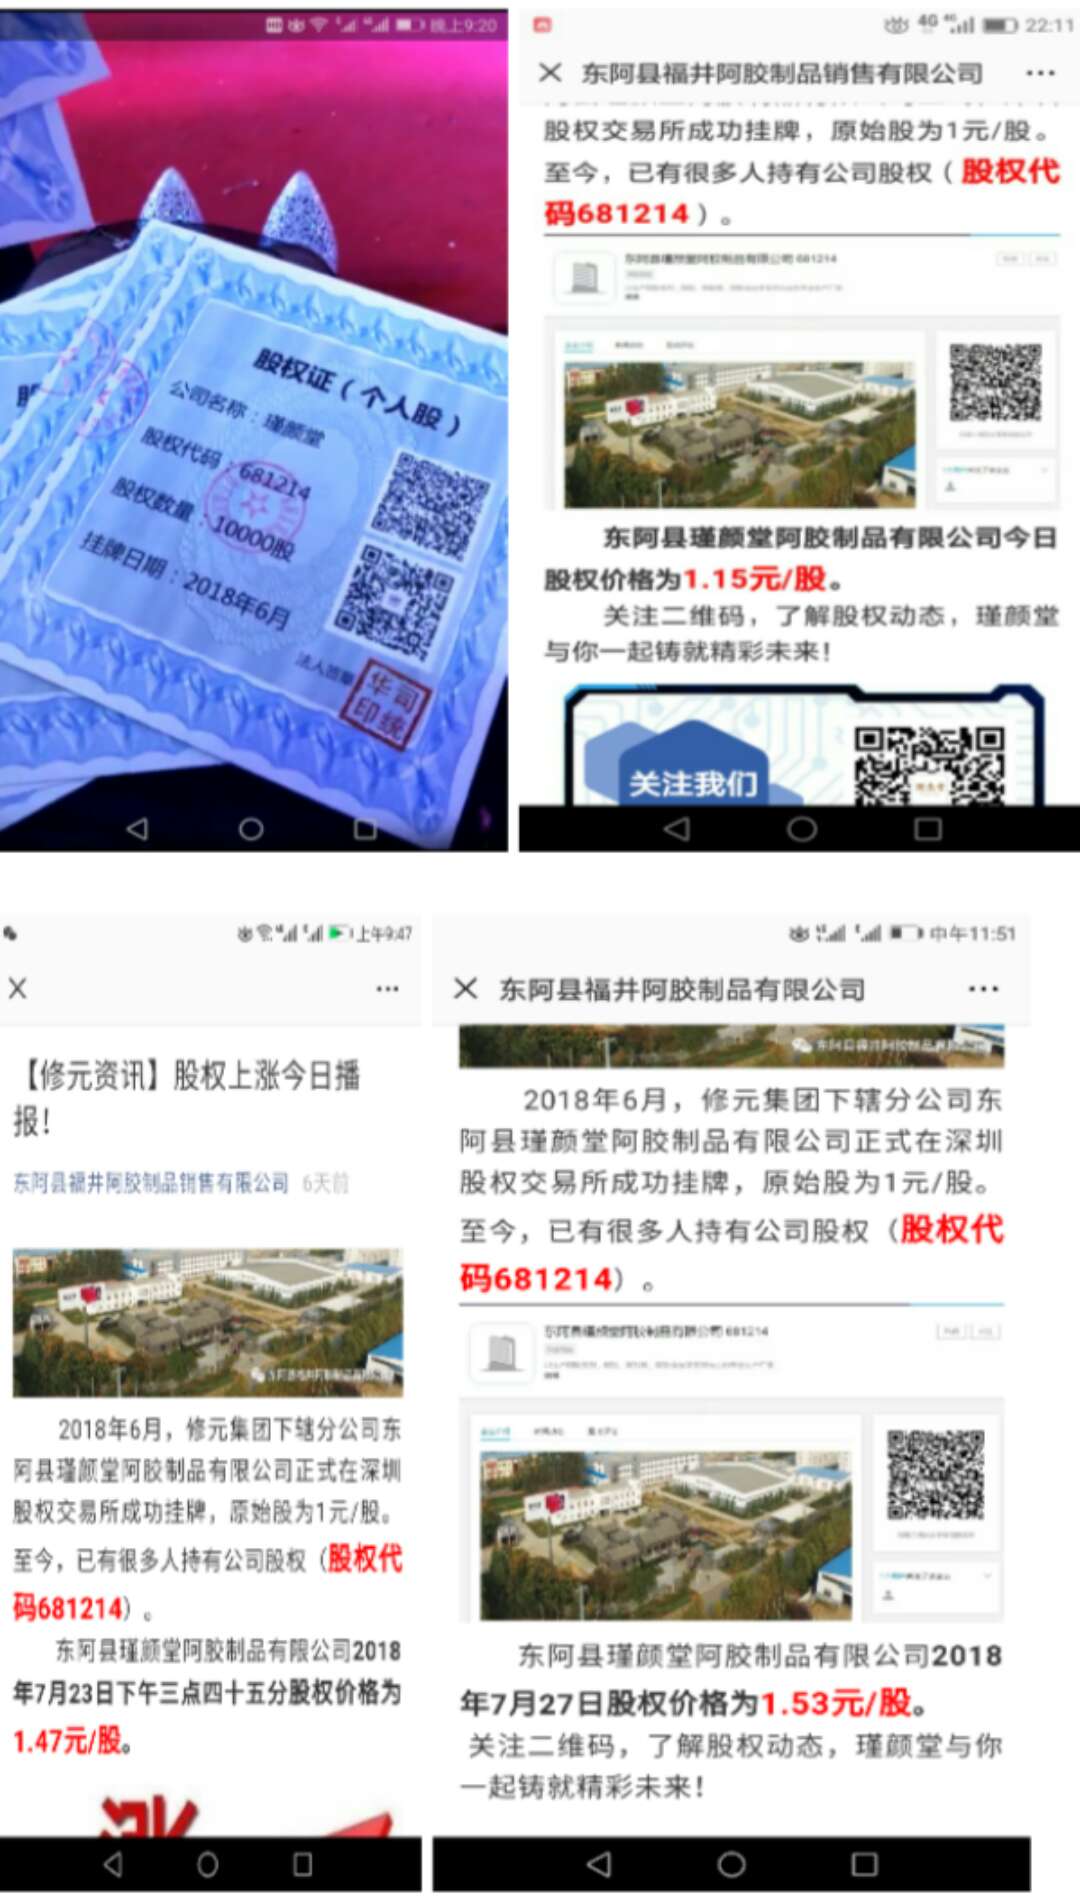 山东东阿县公平局称:修元阿胶生物集团有限公司涉嫌违法传销